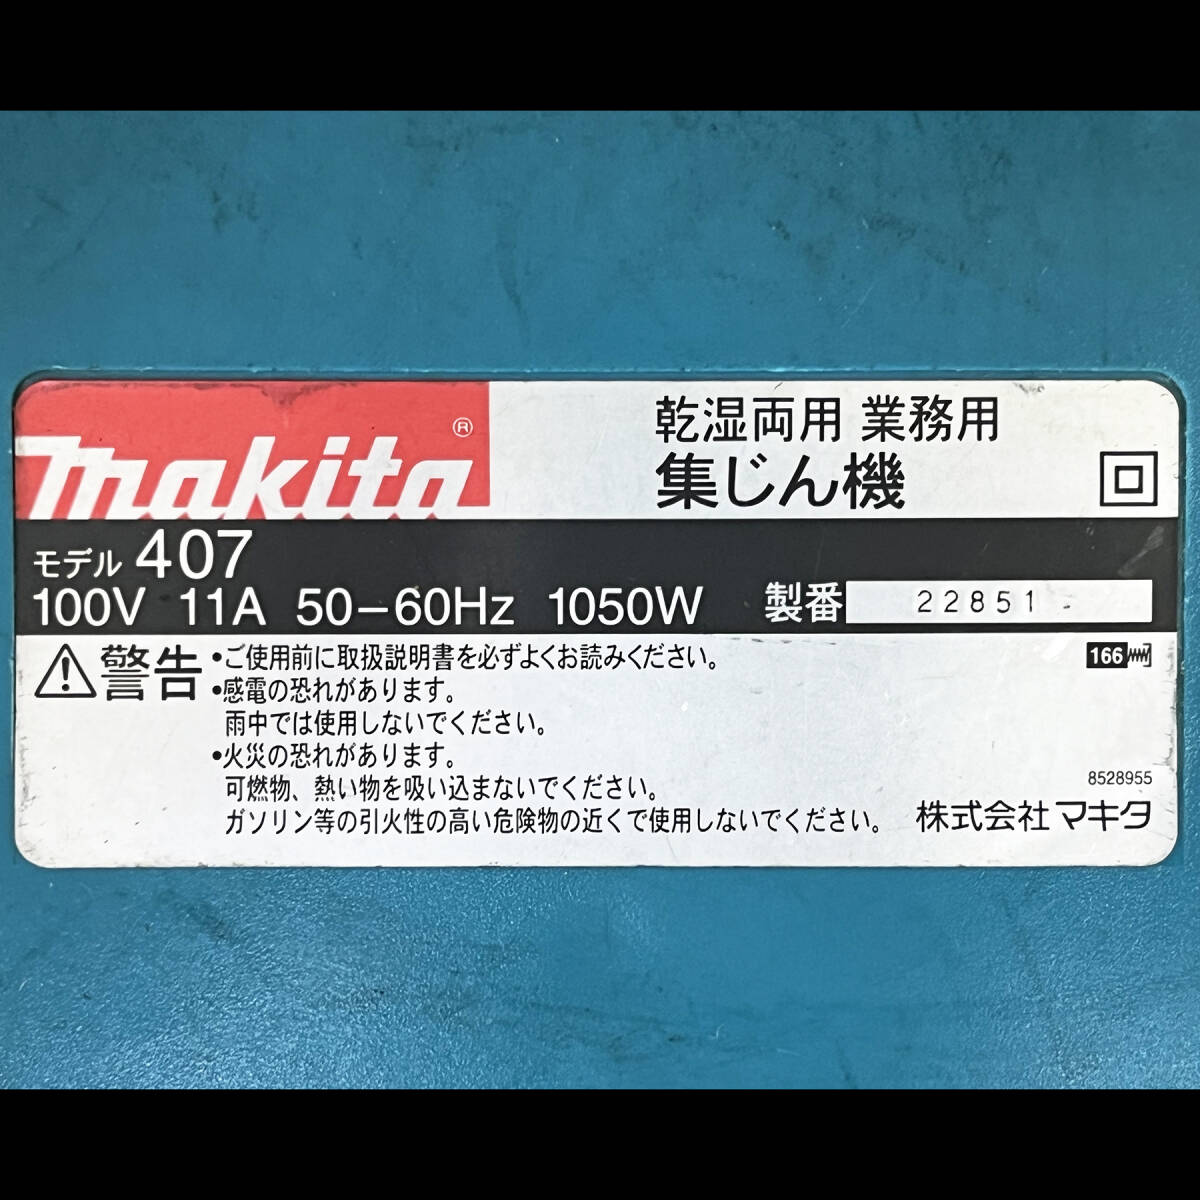 【ジャンク】makita マキタ 乾湿両用 業務用 大型 集じん機 モデル 407 集塵機 吸引部分 100V_画像2